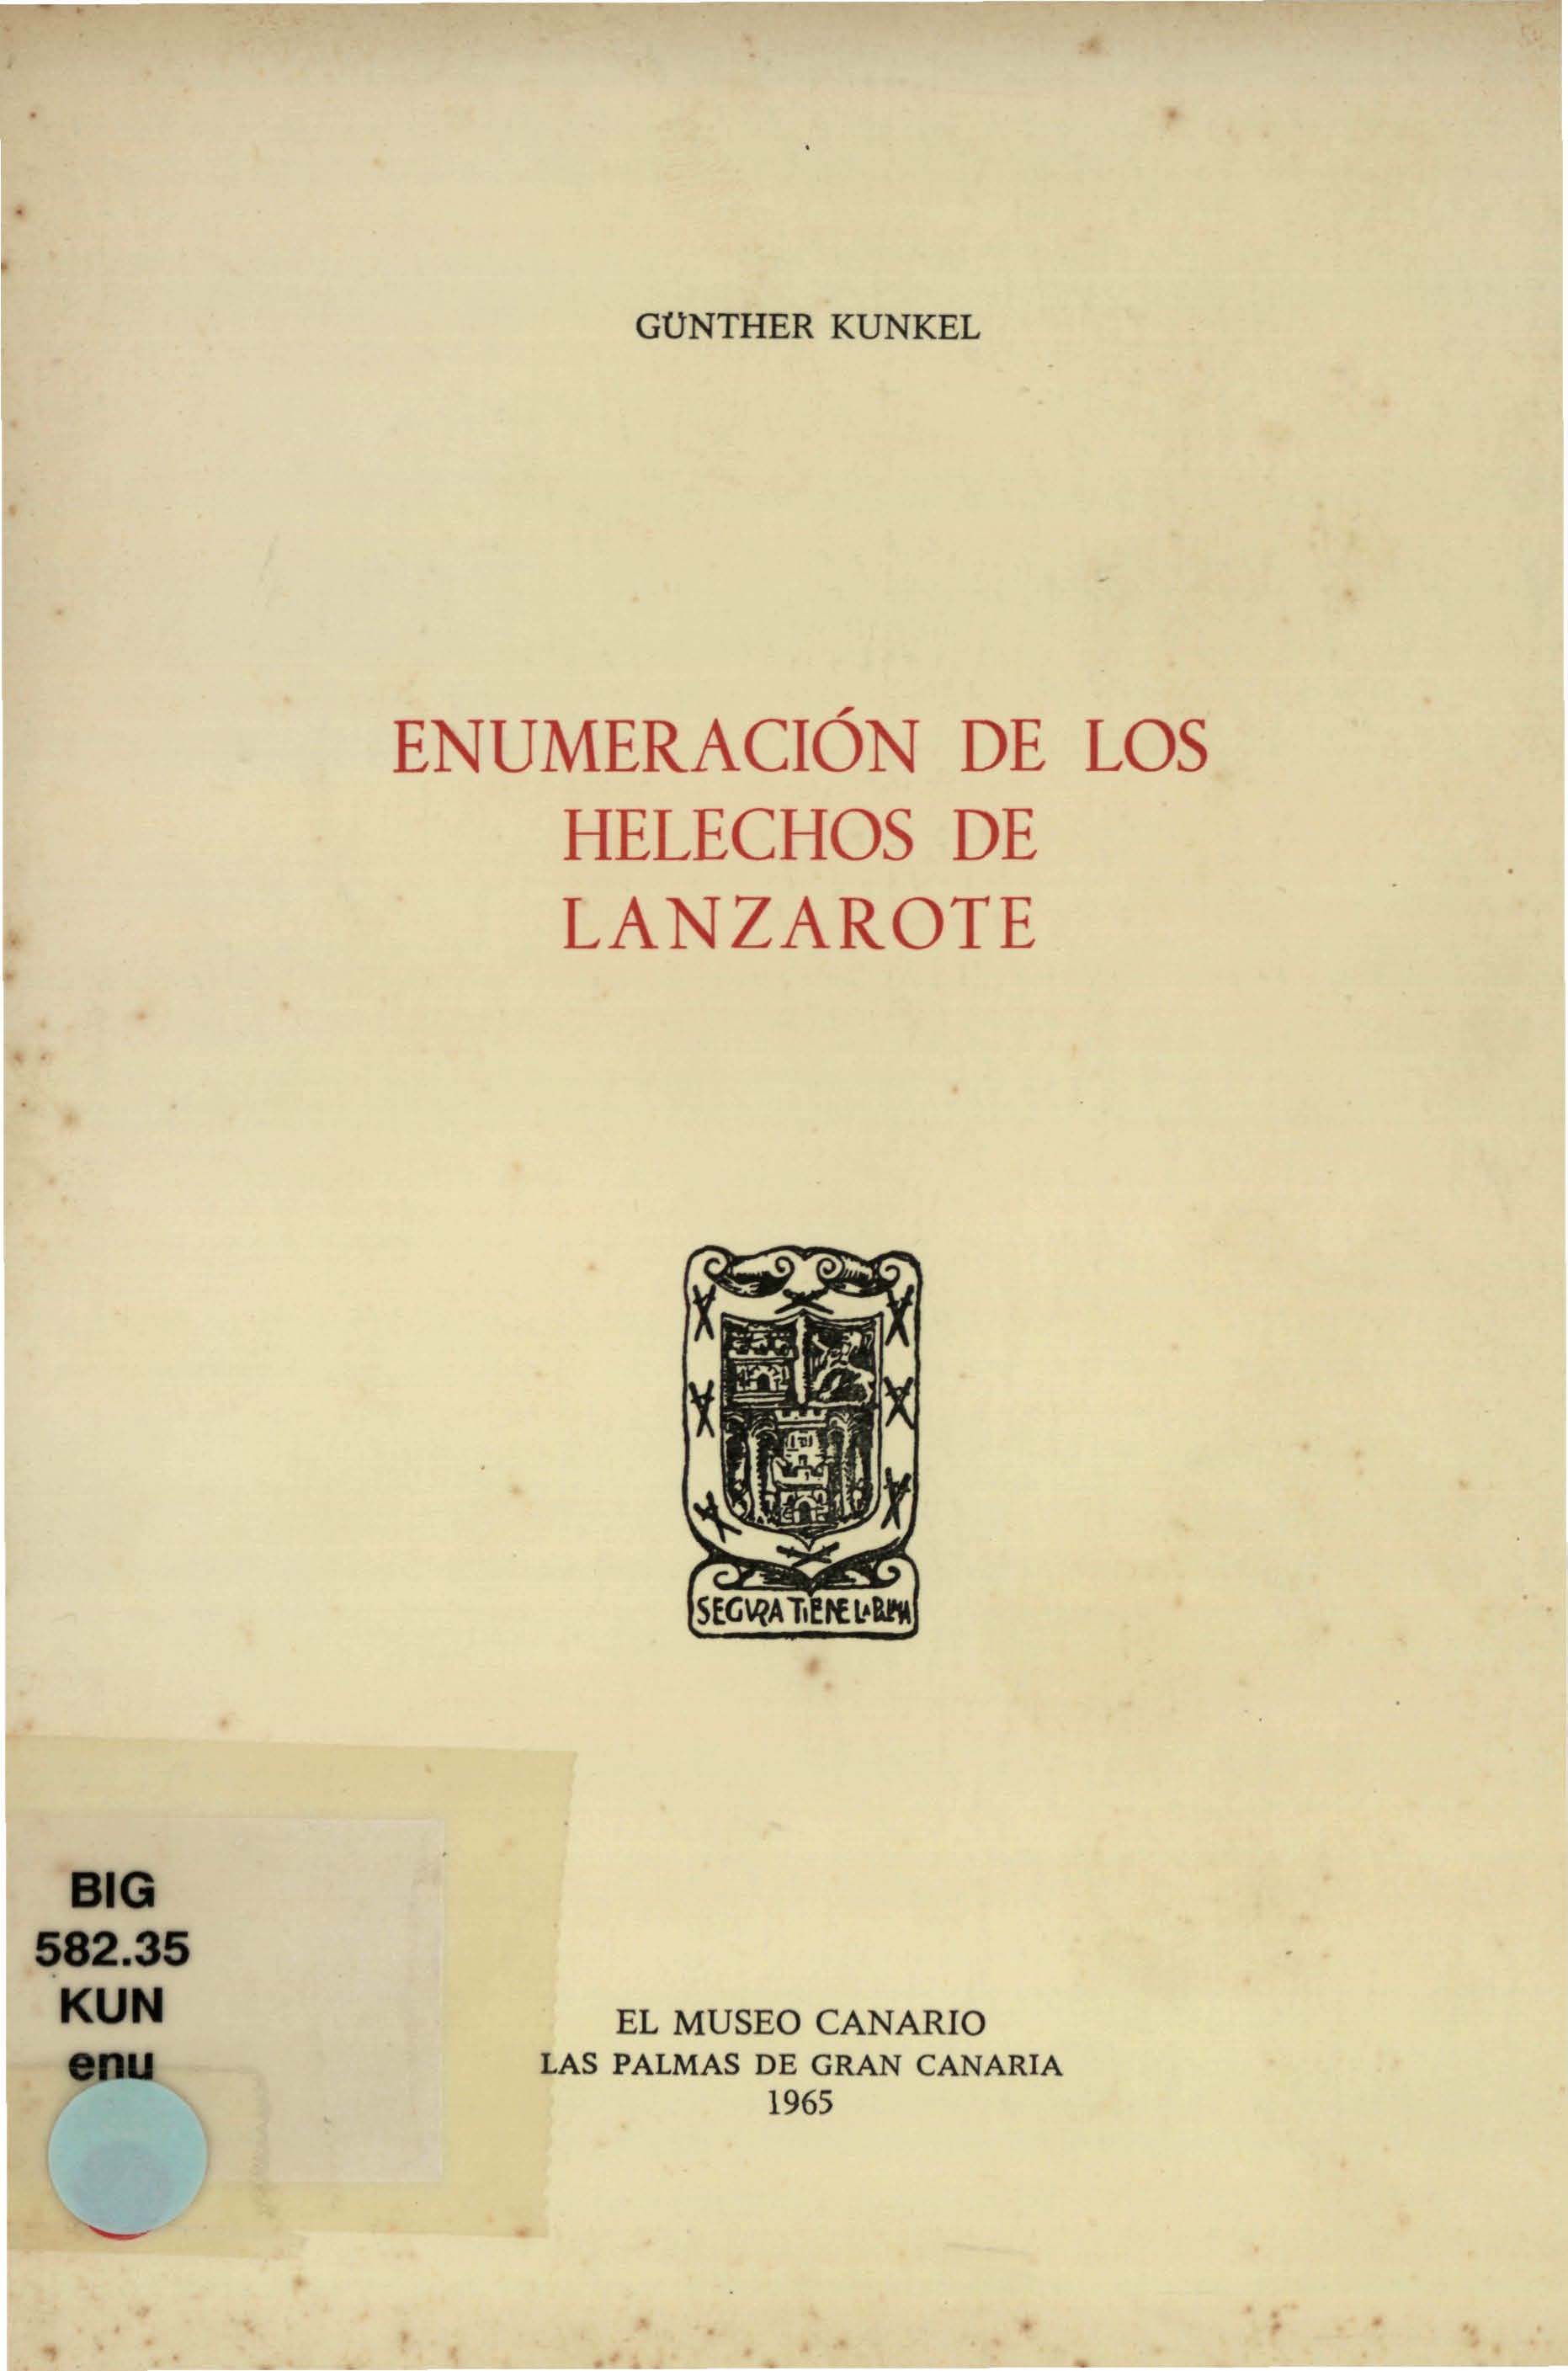 Enumeración de los helechos de Lanzarote